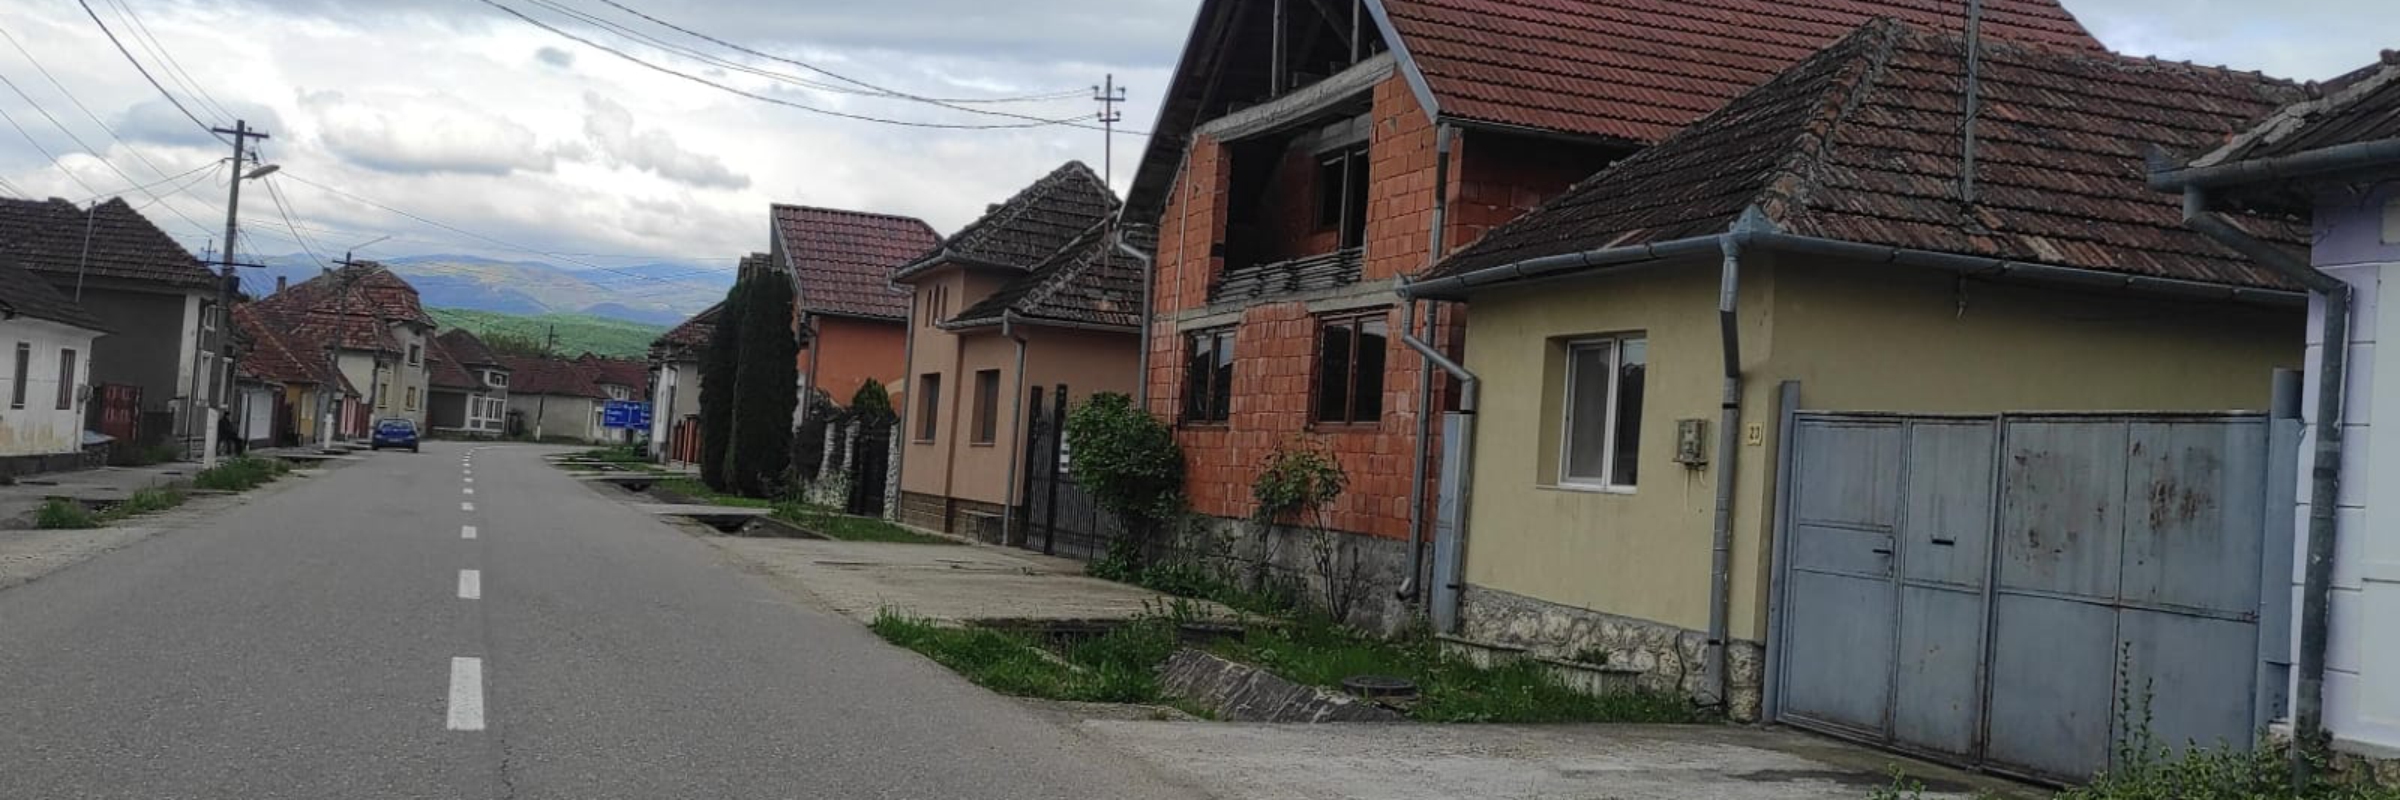 Immobilien Rumänien - Bauernhöfe, Häuser und Grundstücke in den Westkarpaten (Apuseni-Gebirge)